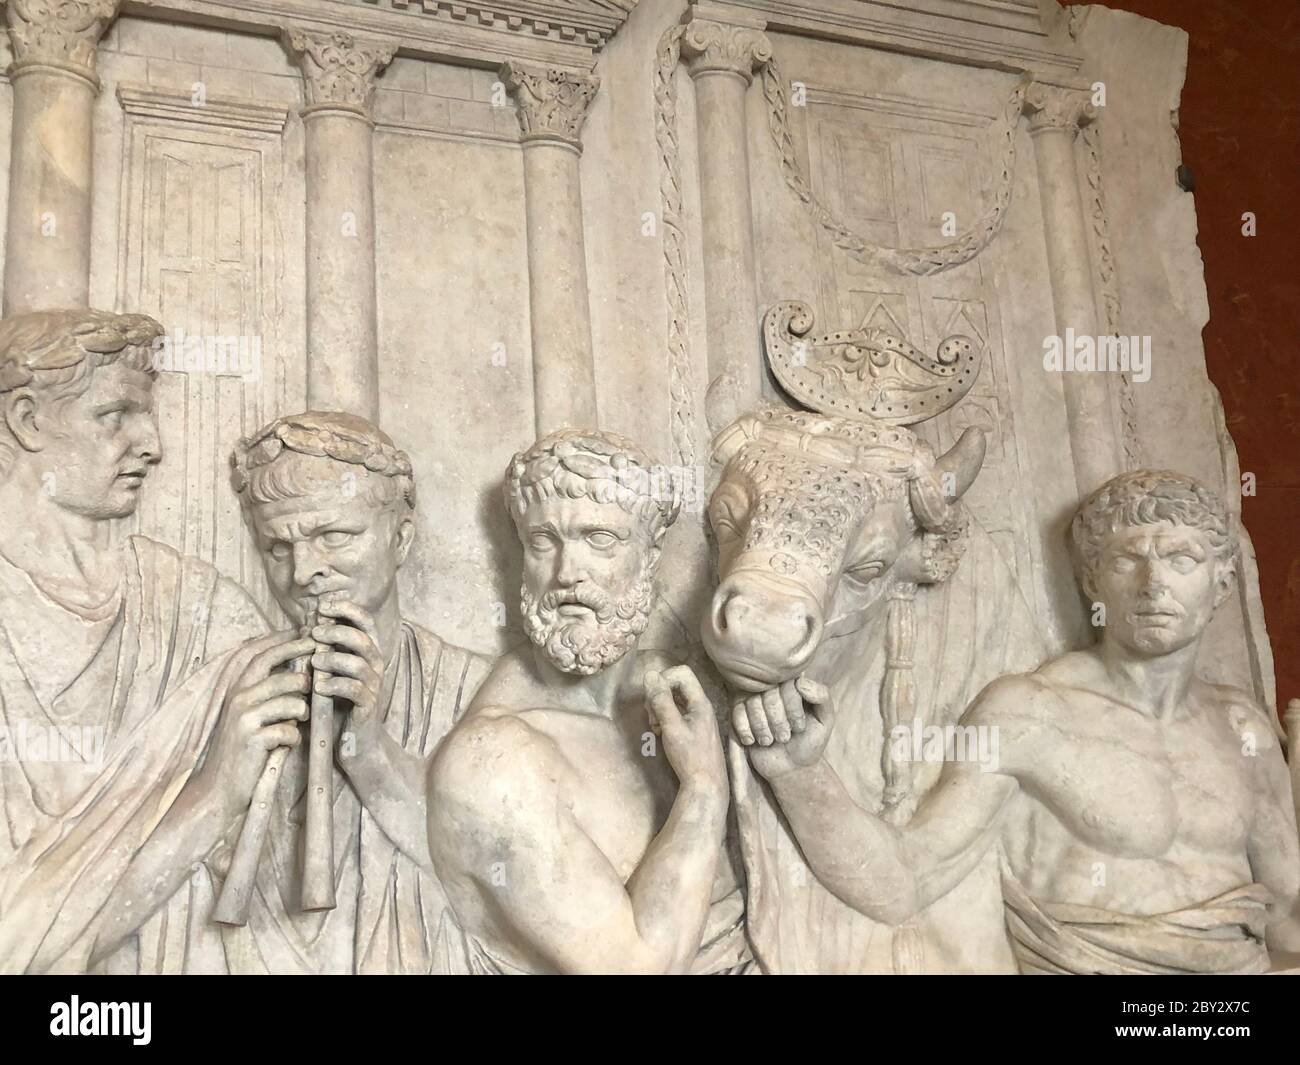 Paris, France - 18 mai 2019 : fragment d'un relief architectural dans le cadre de la décoration d'un monument triomphal construit à Rome Banque D'Images